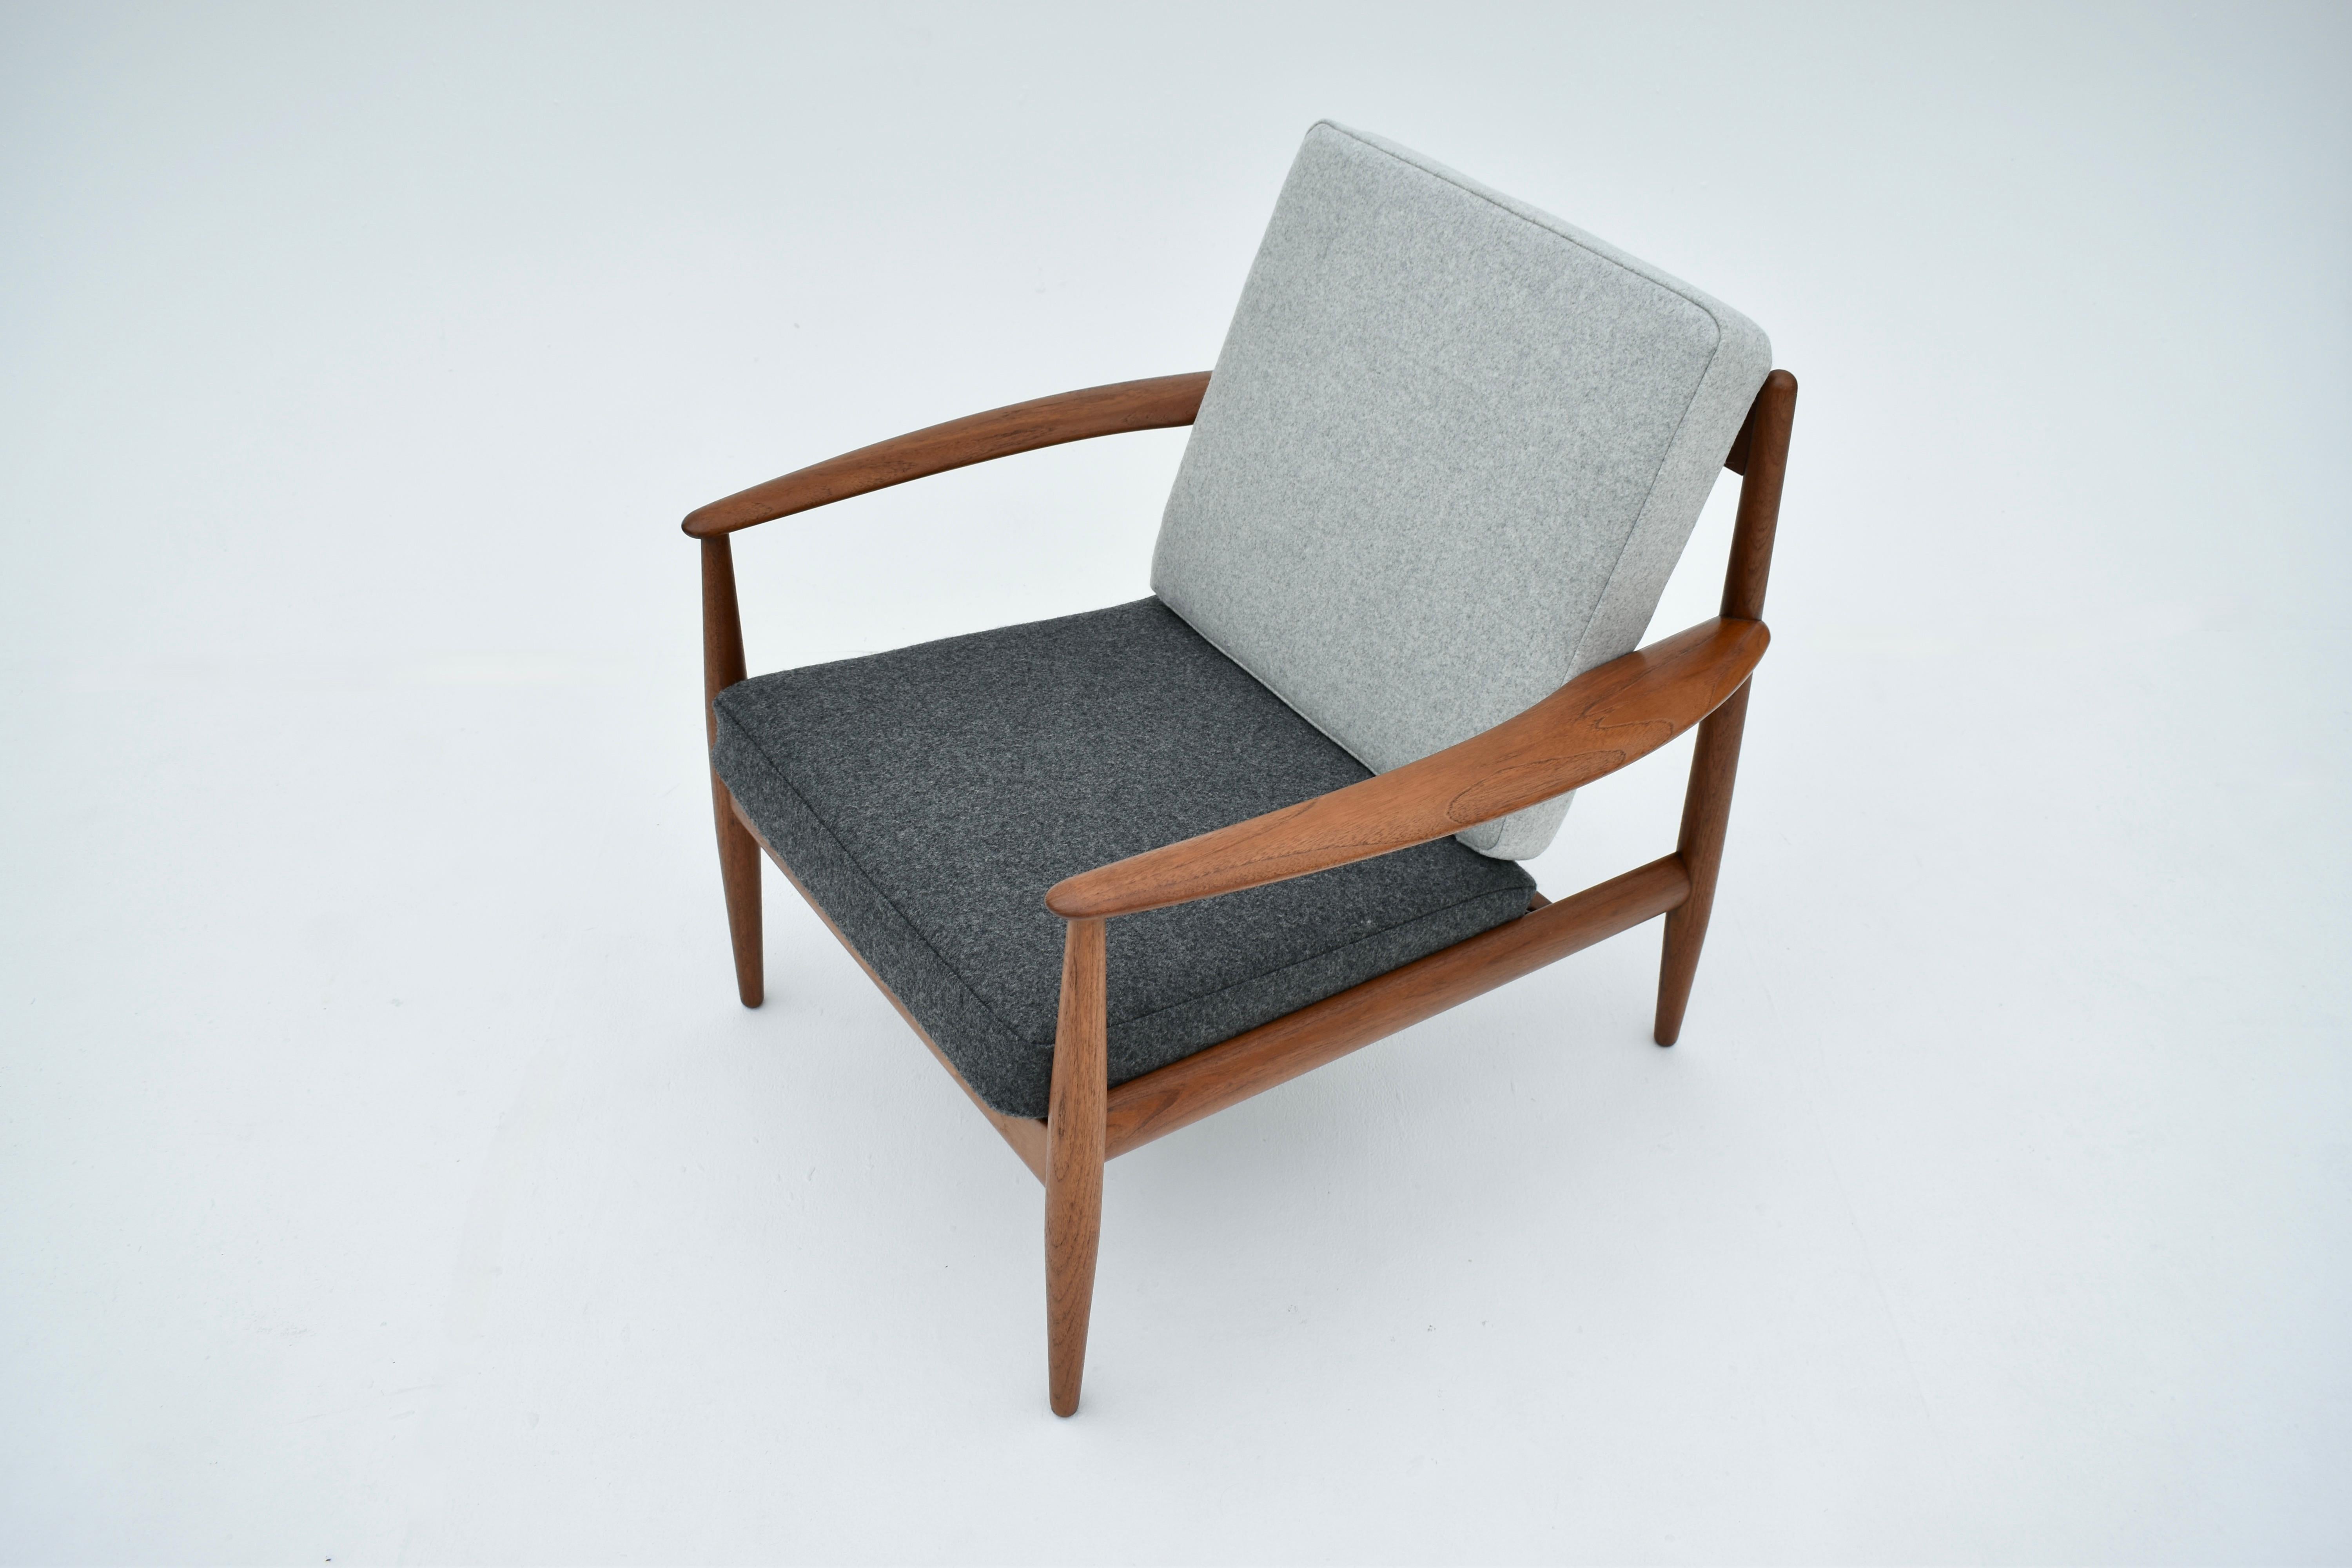 Teak Midcentury Danish Grete Jalk Model 118 Lounge Chairs For France & Son